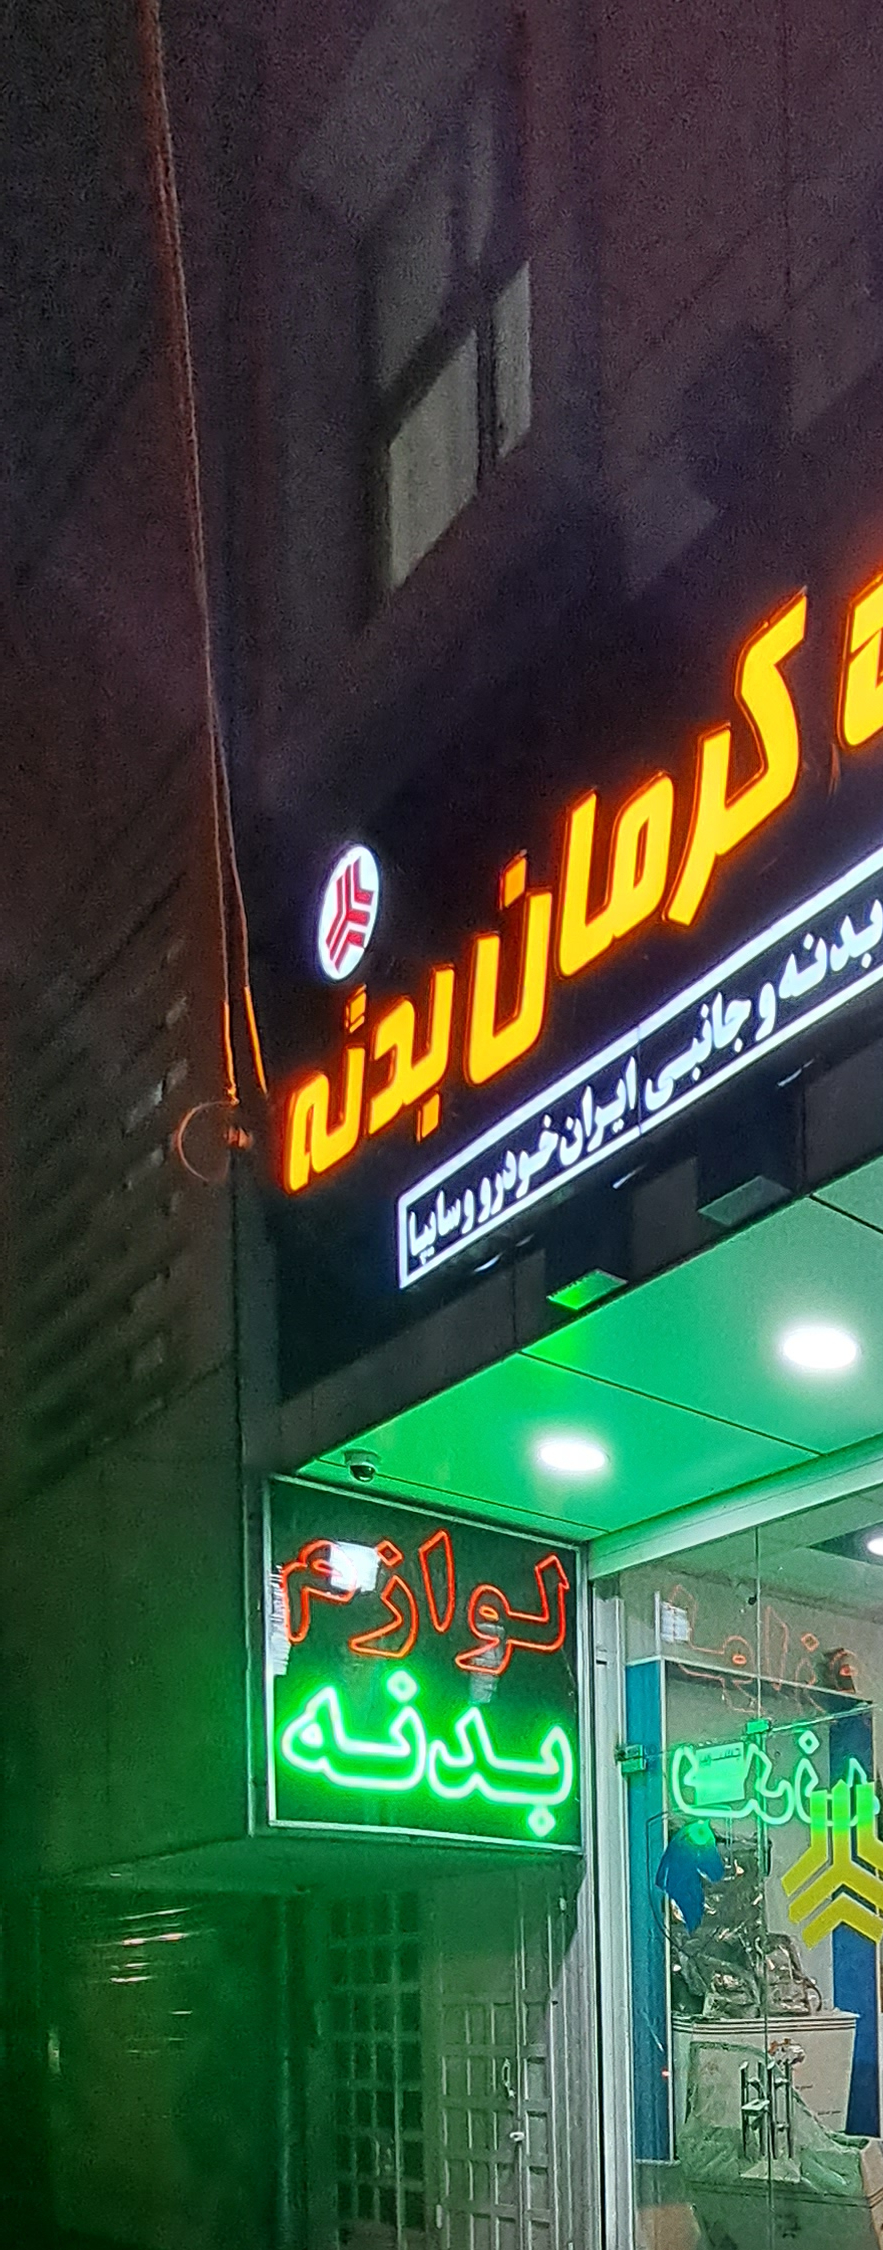 فروشگاه همکار ماشین کرمان بدنه